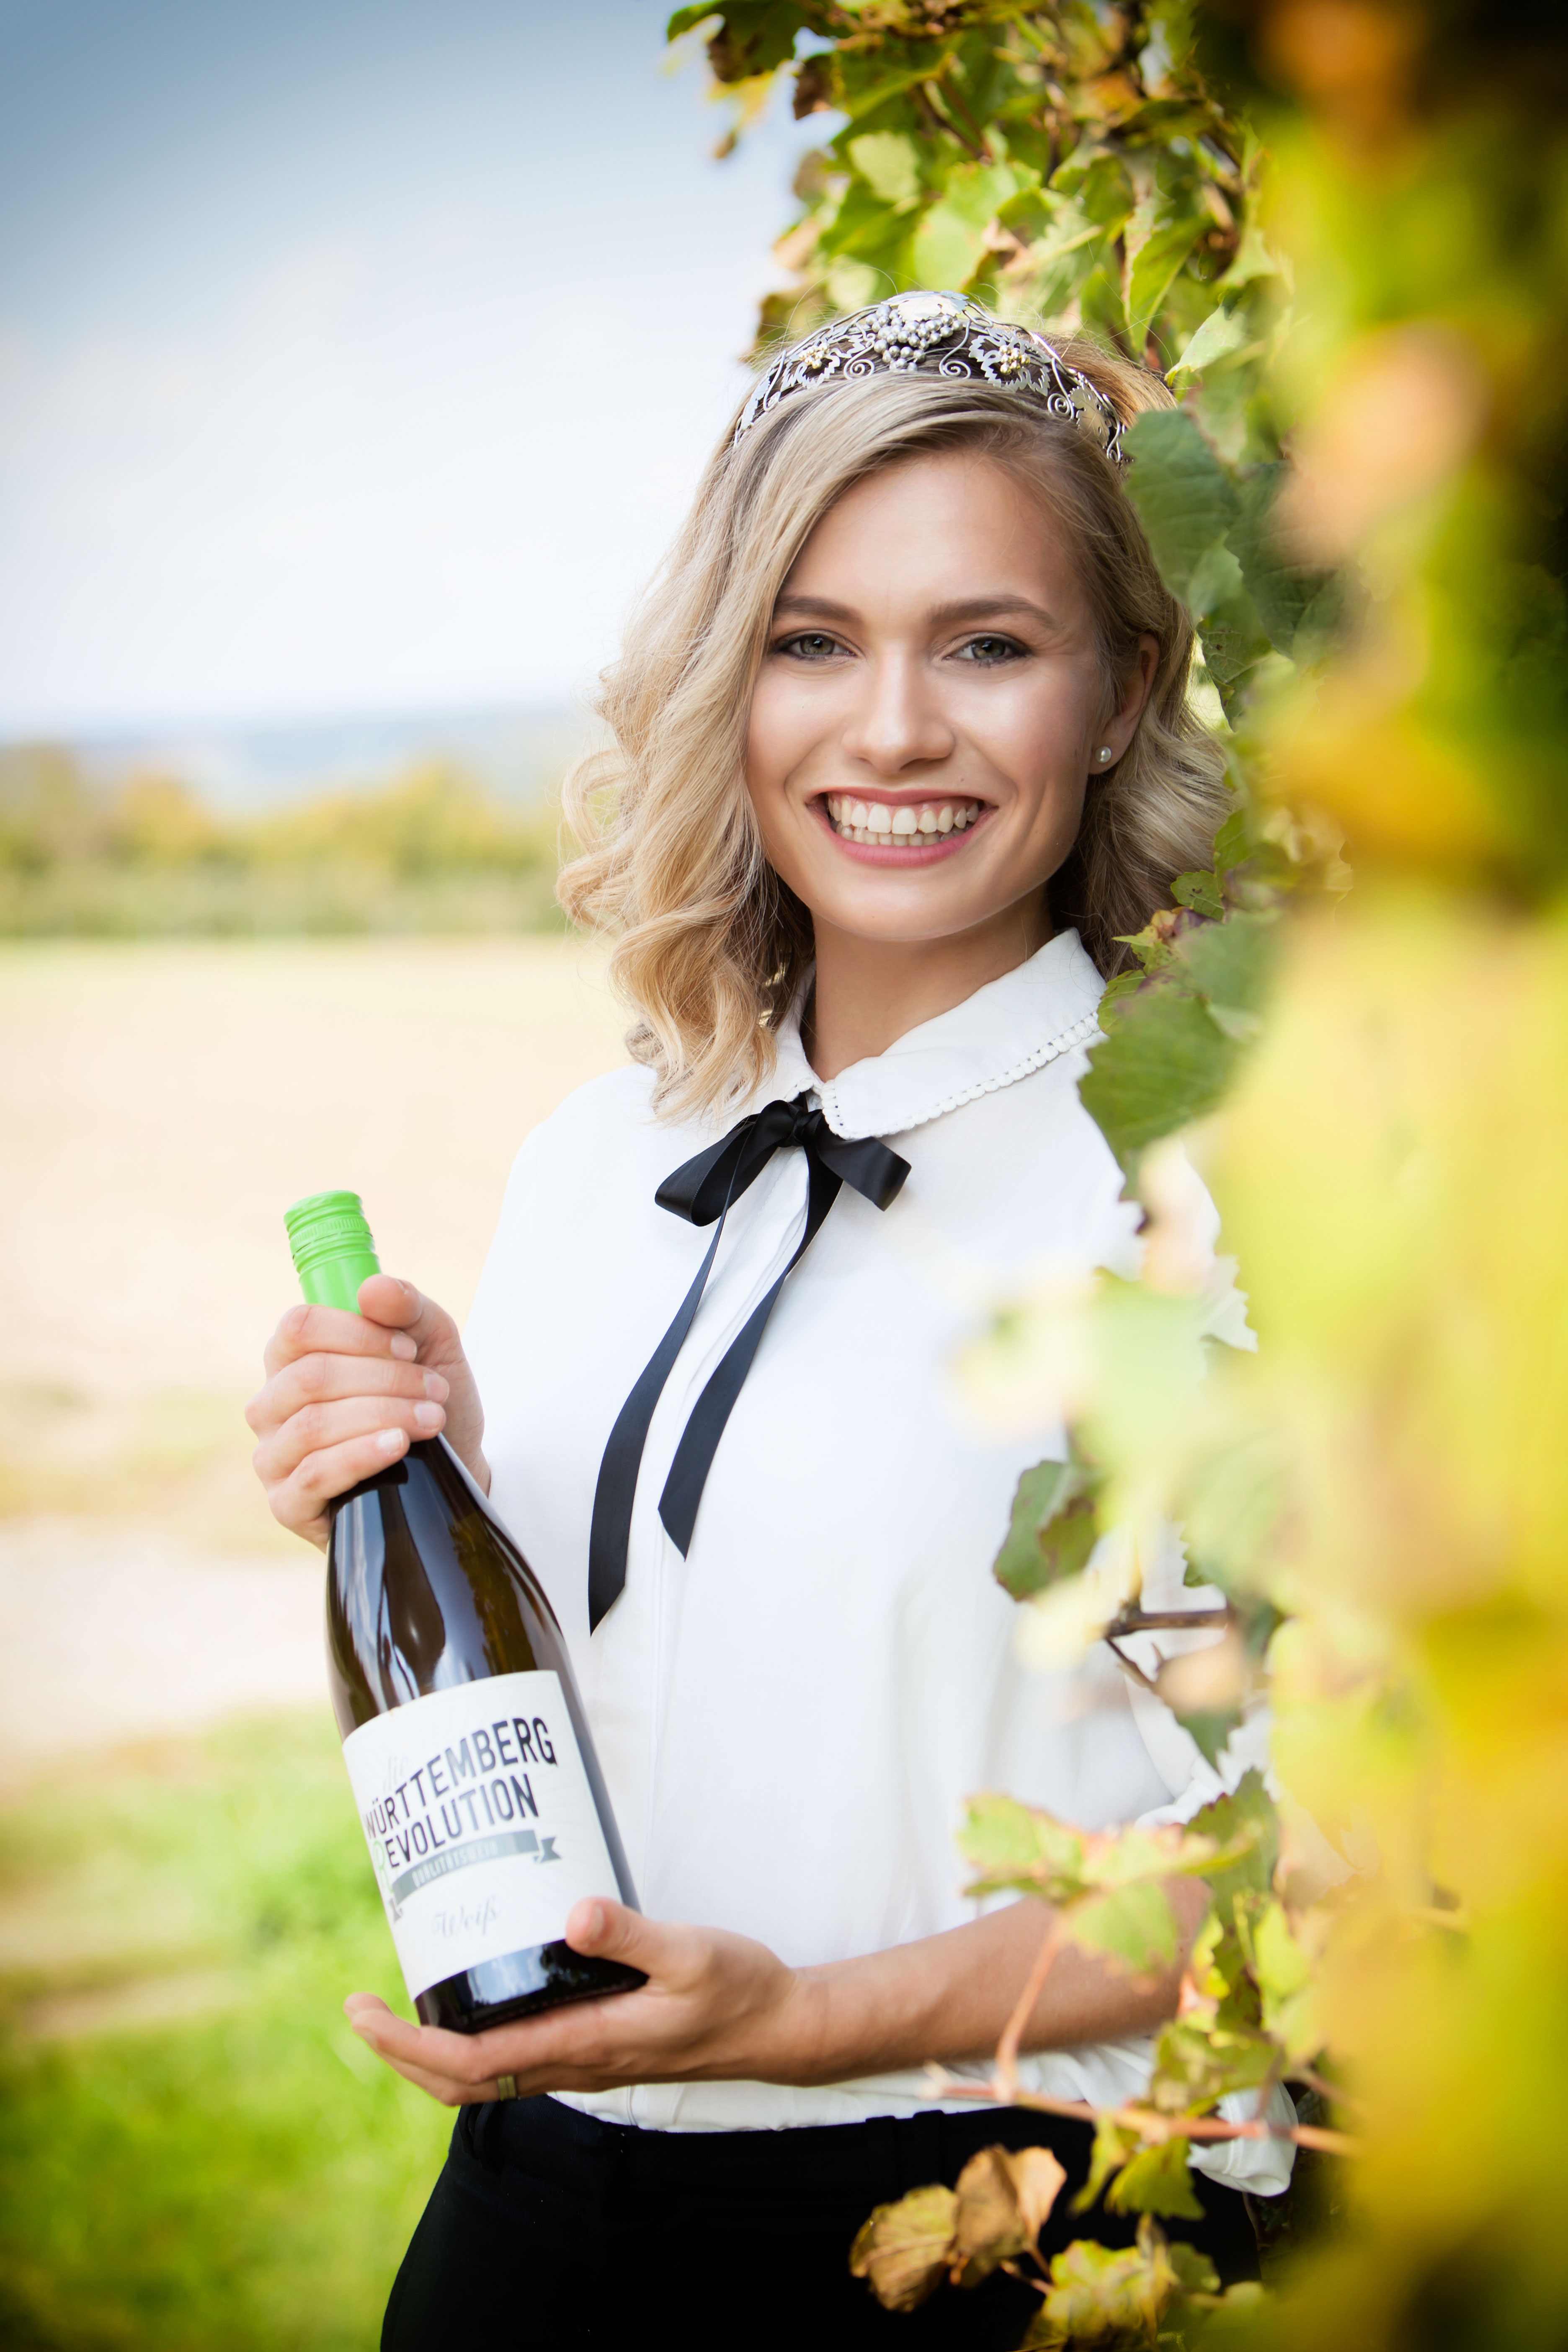 Man sieht die Württemberger Weinkönigin Carolin Klöckner, mit einer Weinflasche, vor einem Feld.